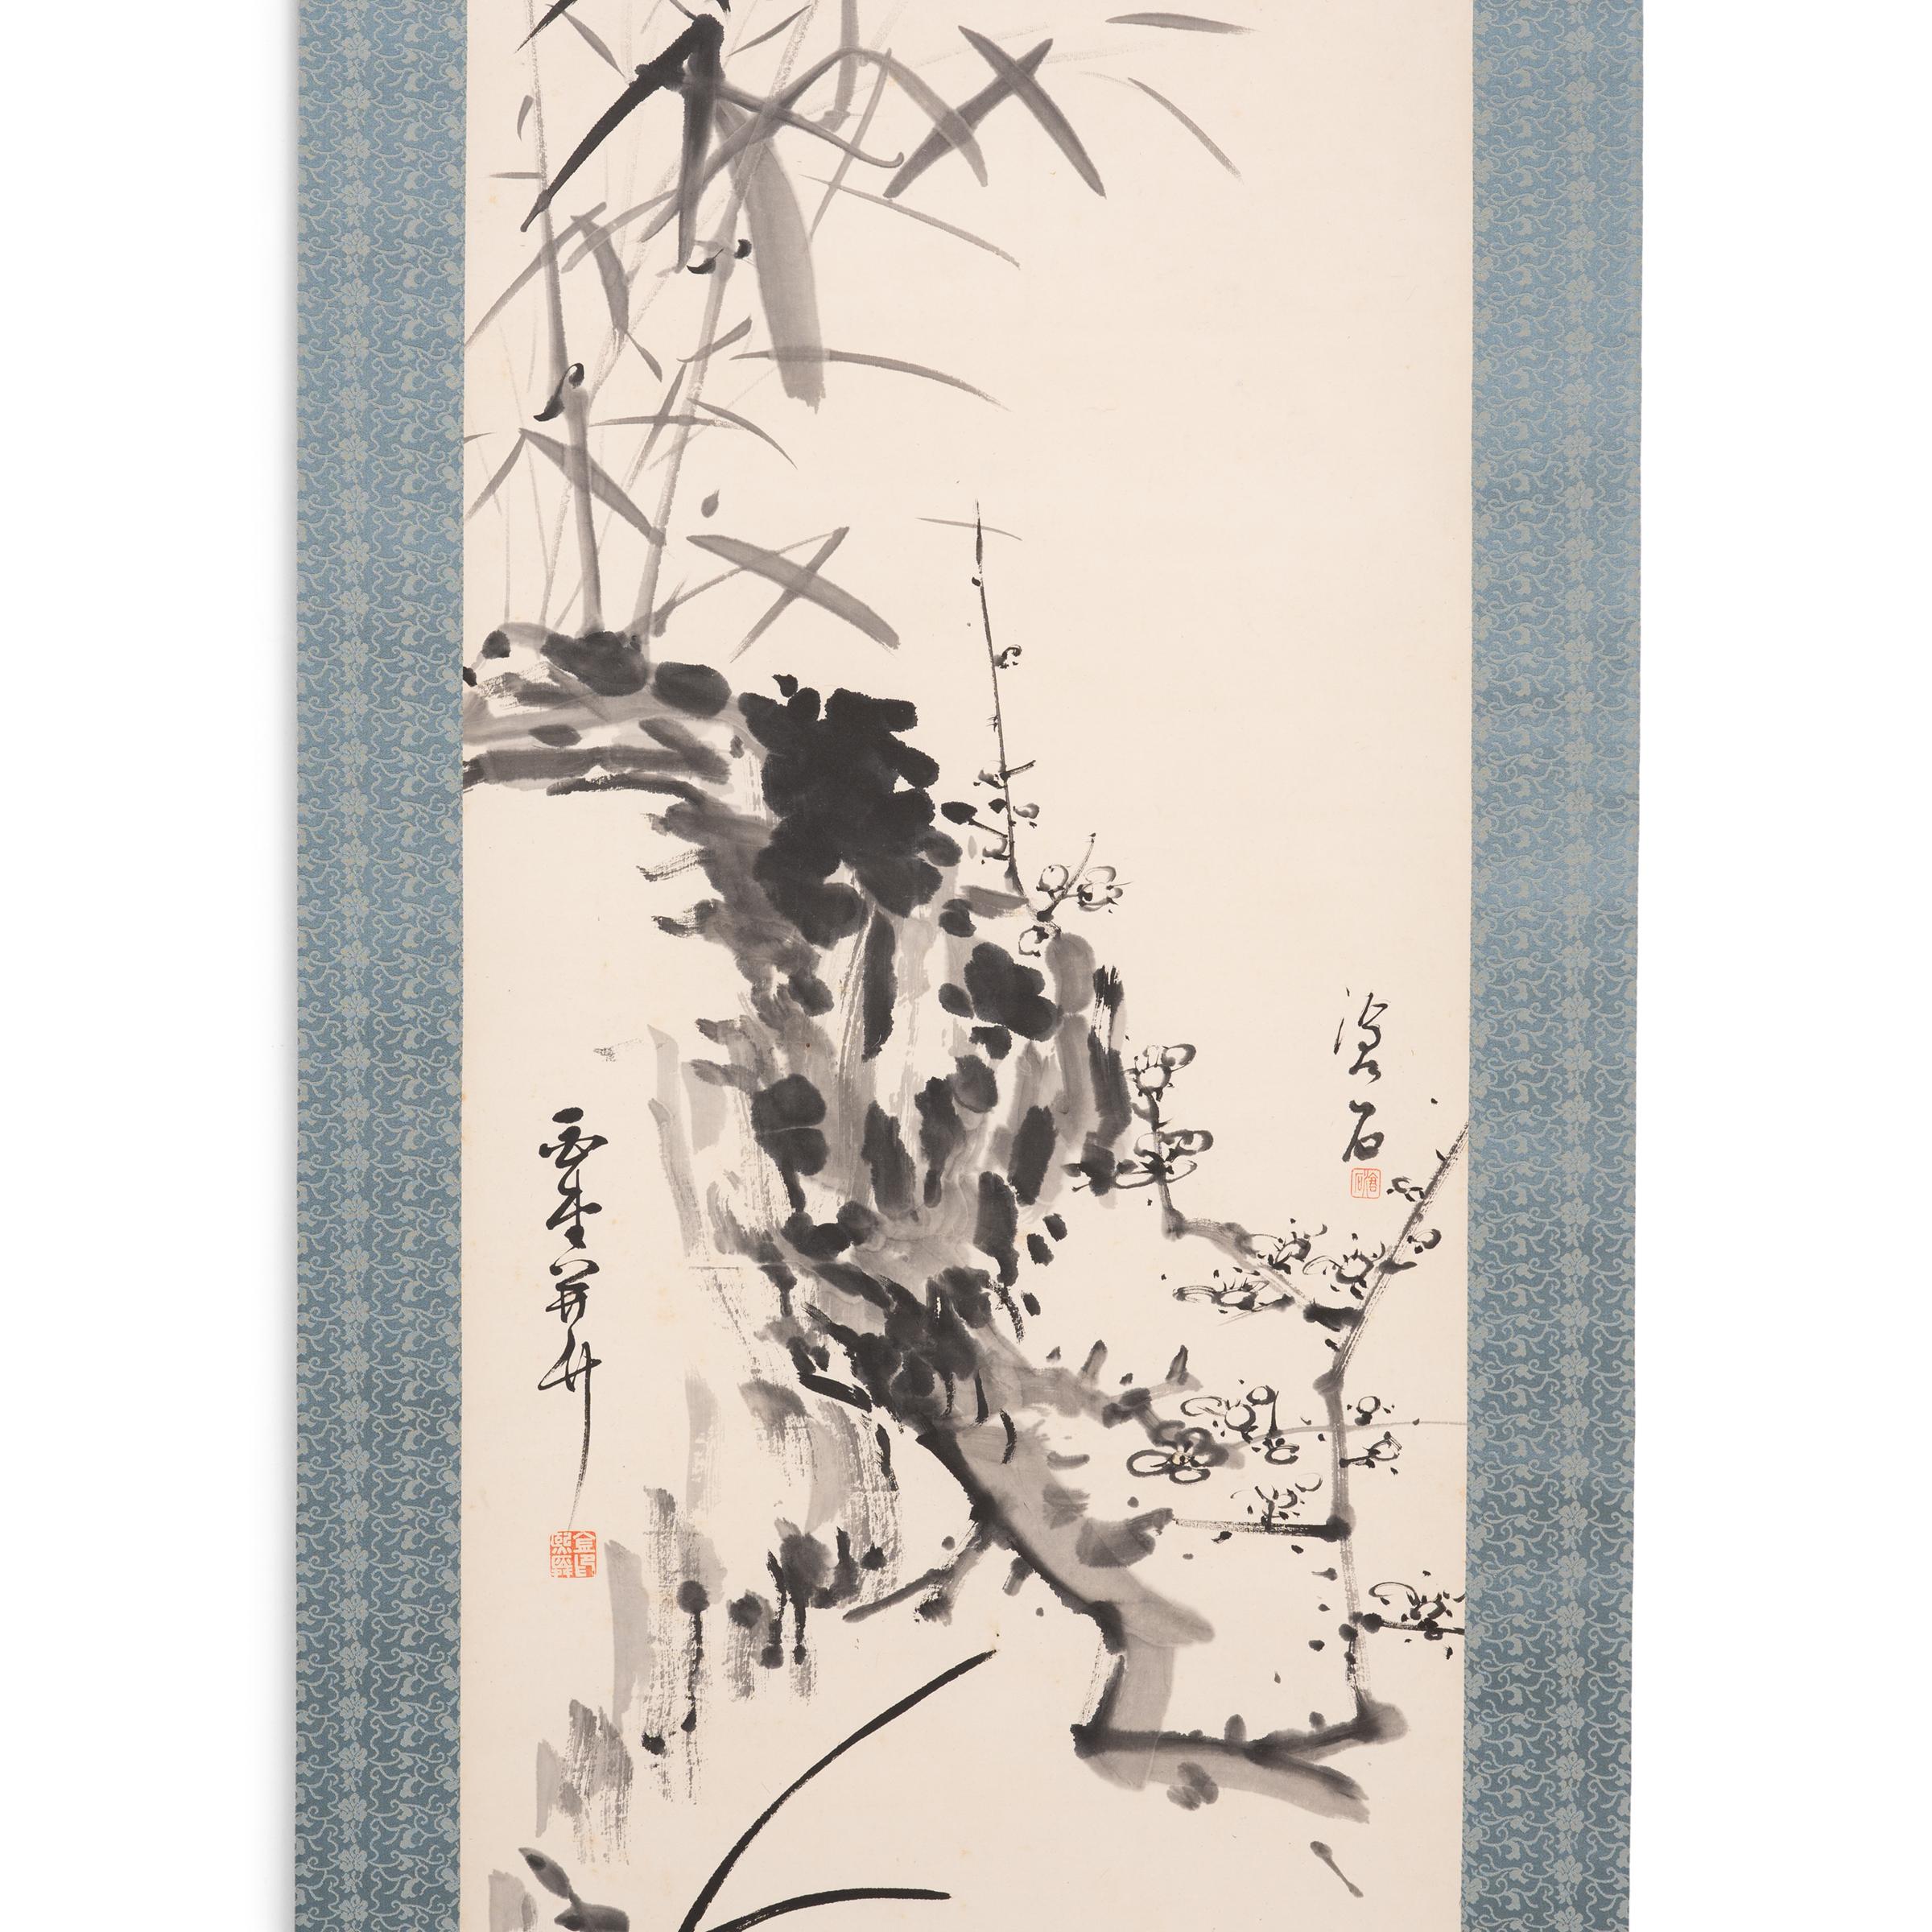 Dieses exquisite hängende Rollbild aus dem späten 18. Jahrhundert stellt die heilige Form des Bodhisattva Guanyin dar, die im japanischen Buddhismus als Shō Kannon oder Guze Kannon bekannt ist. Beschrieben als der 